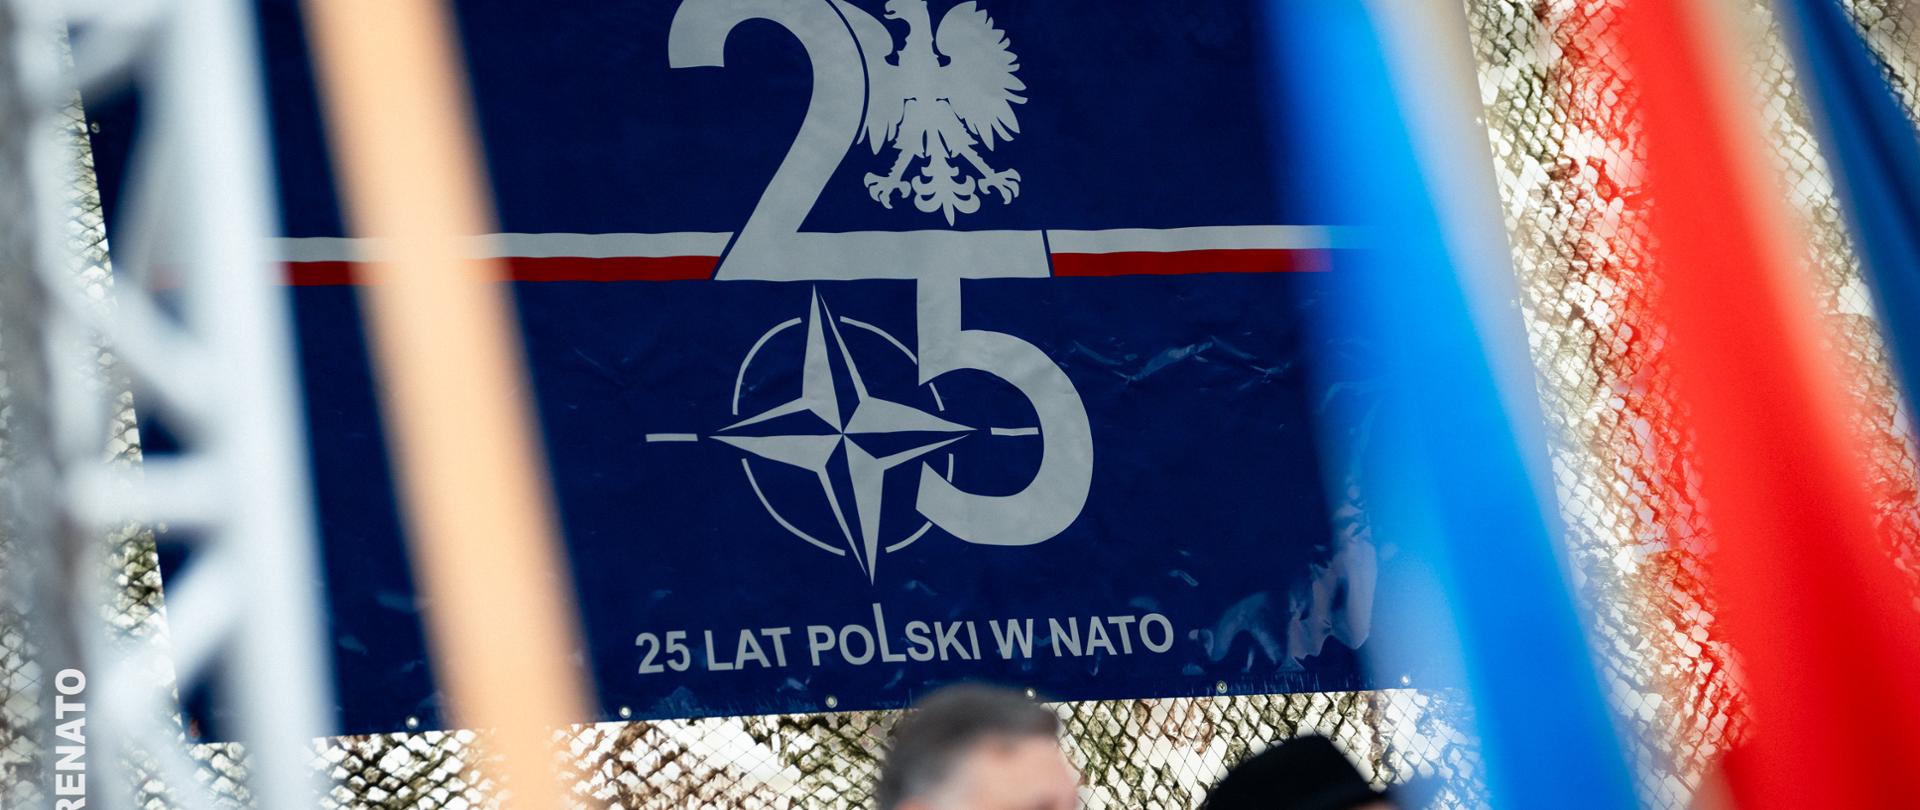 Widok na baner 25 lat Polski w NATO